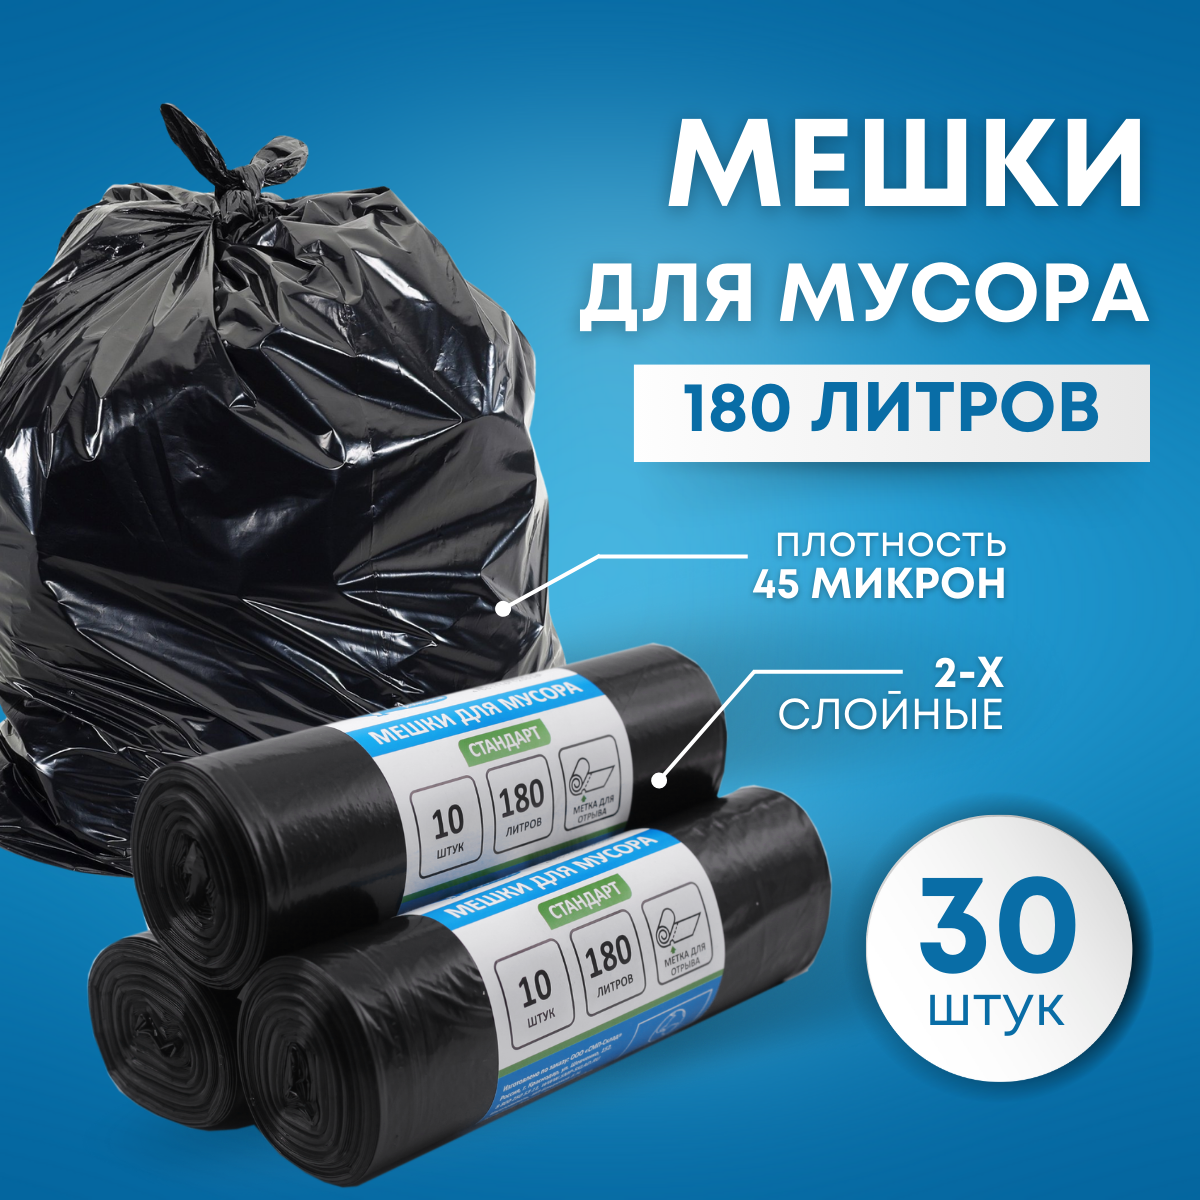 Пакеты для мусора SMP Стандарт 180 литров комплект 3 рулона по 10 штук